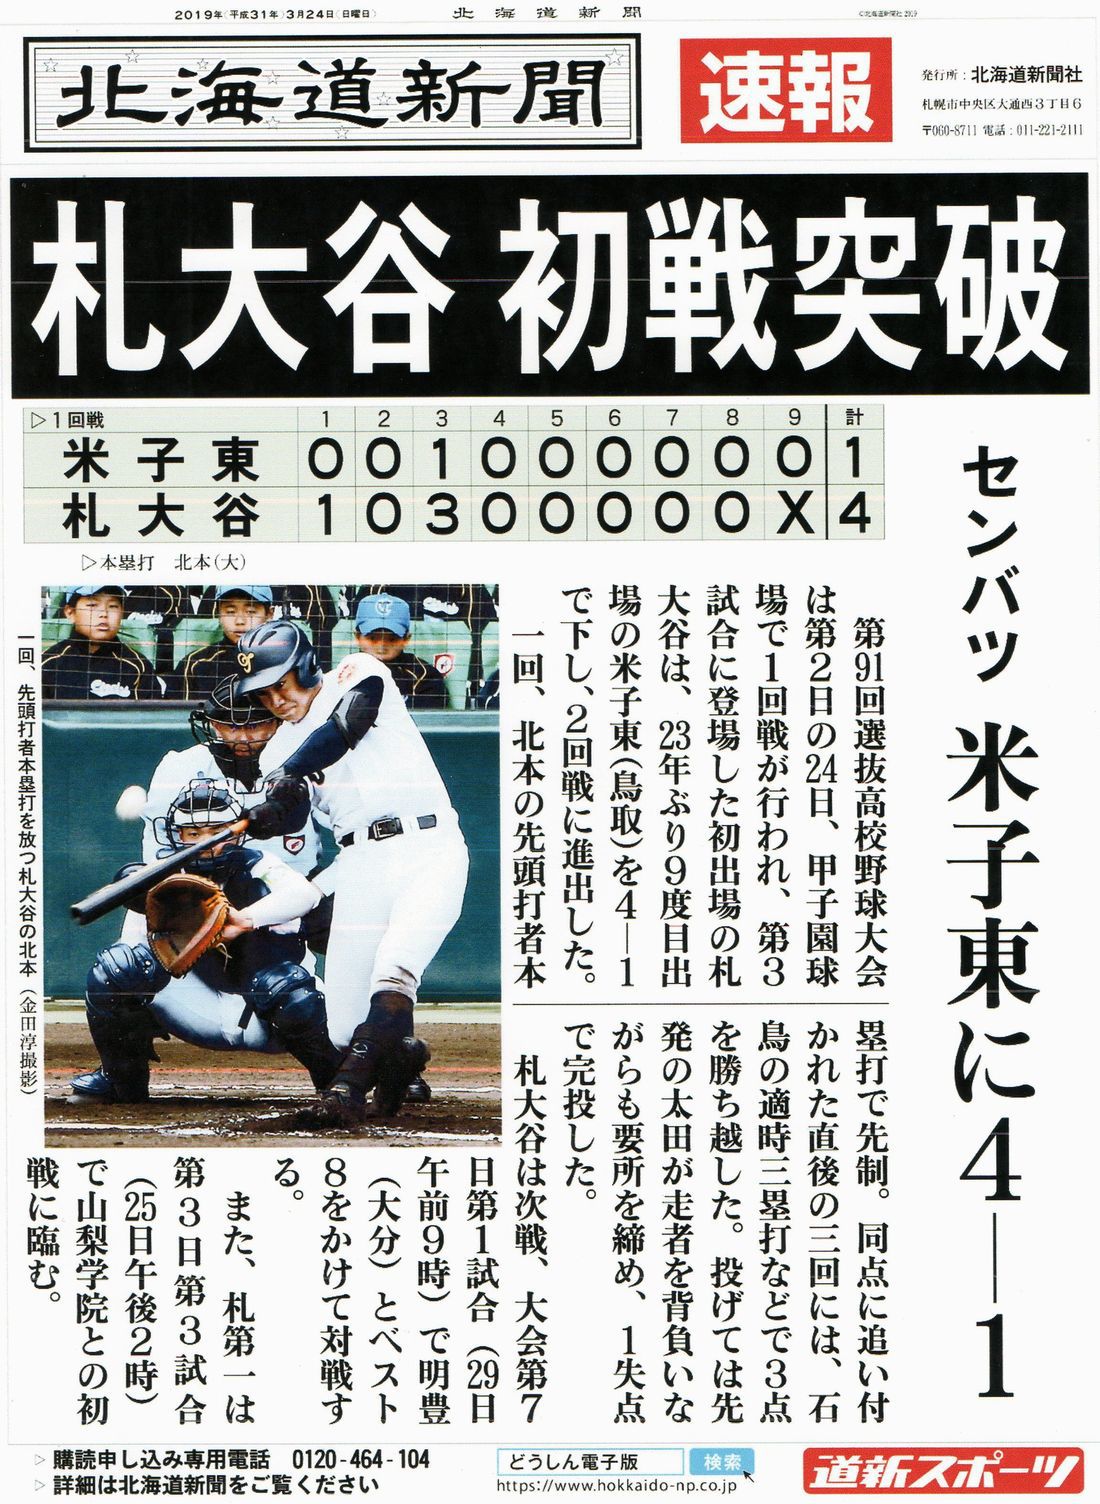 第91回春の記念選抜高校野球大会、札幌大谷高校が春夏通じて初めて甲子園で勝利となりました。